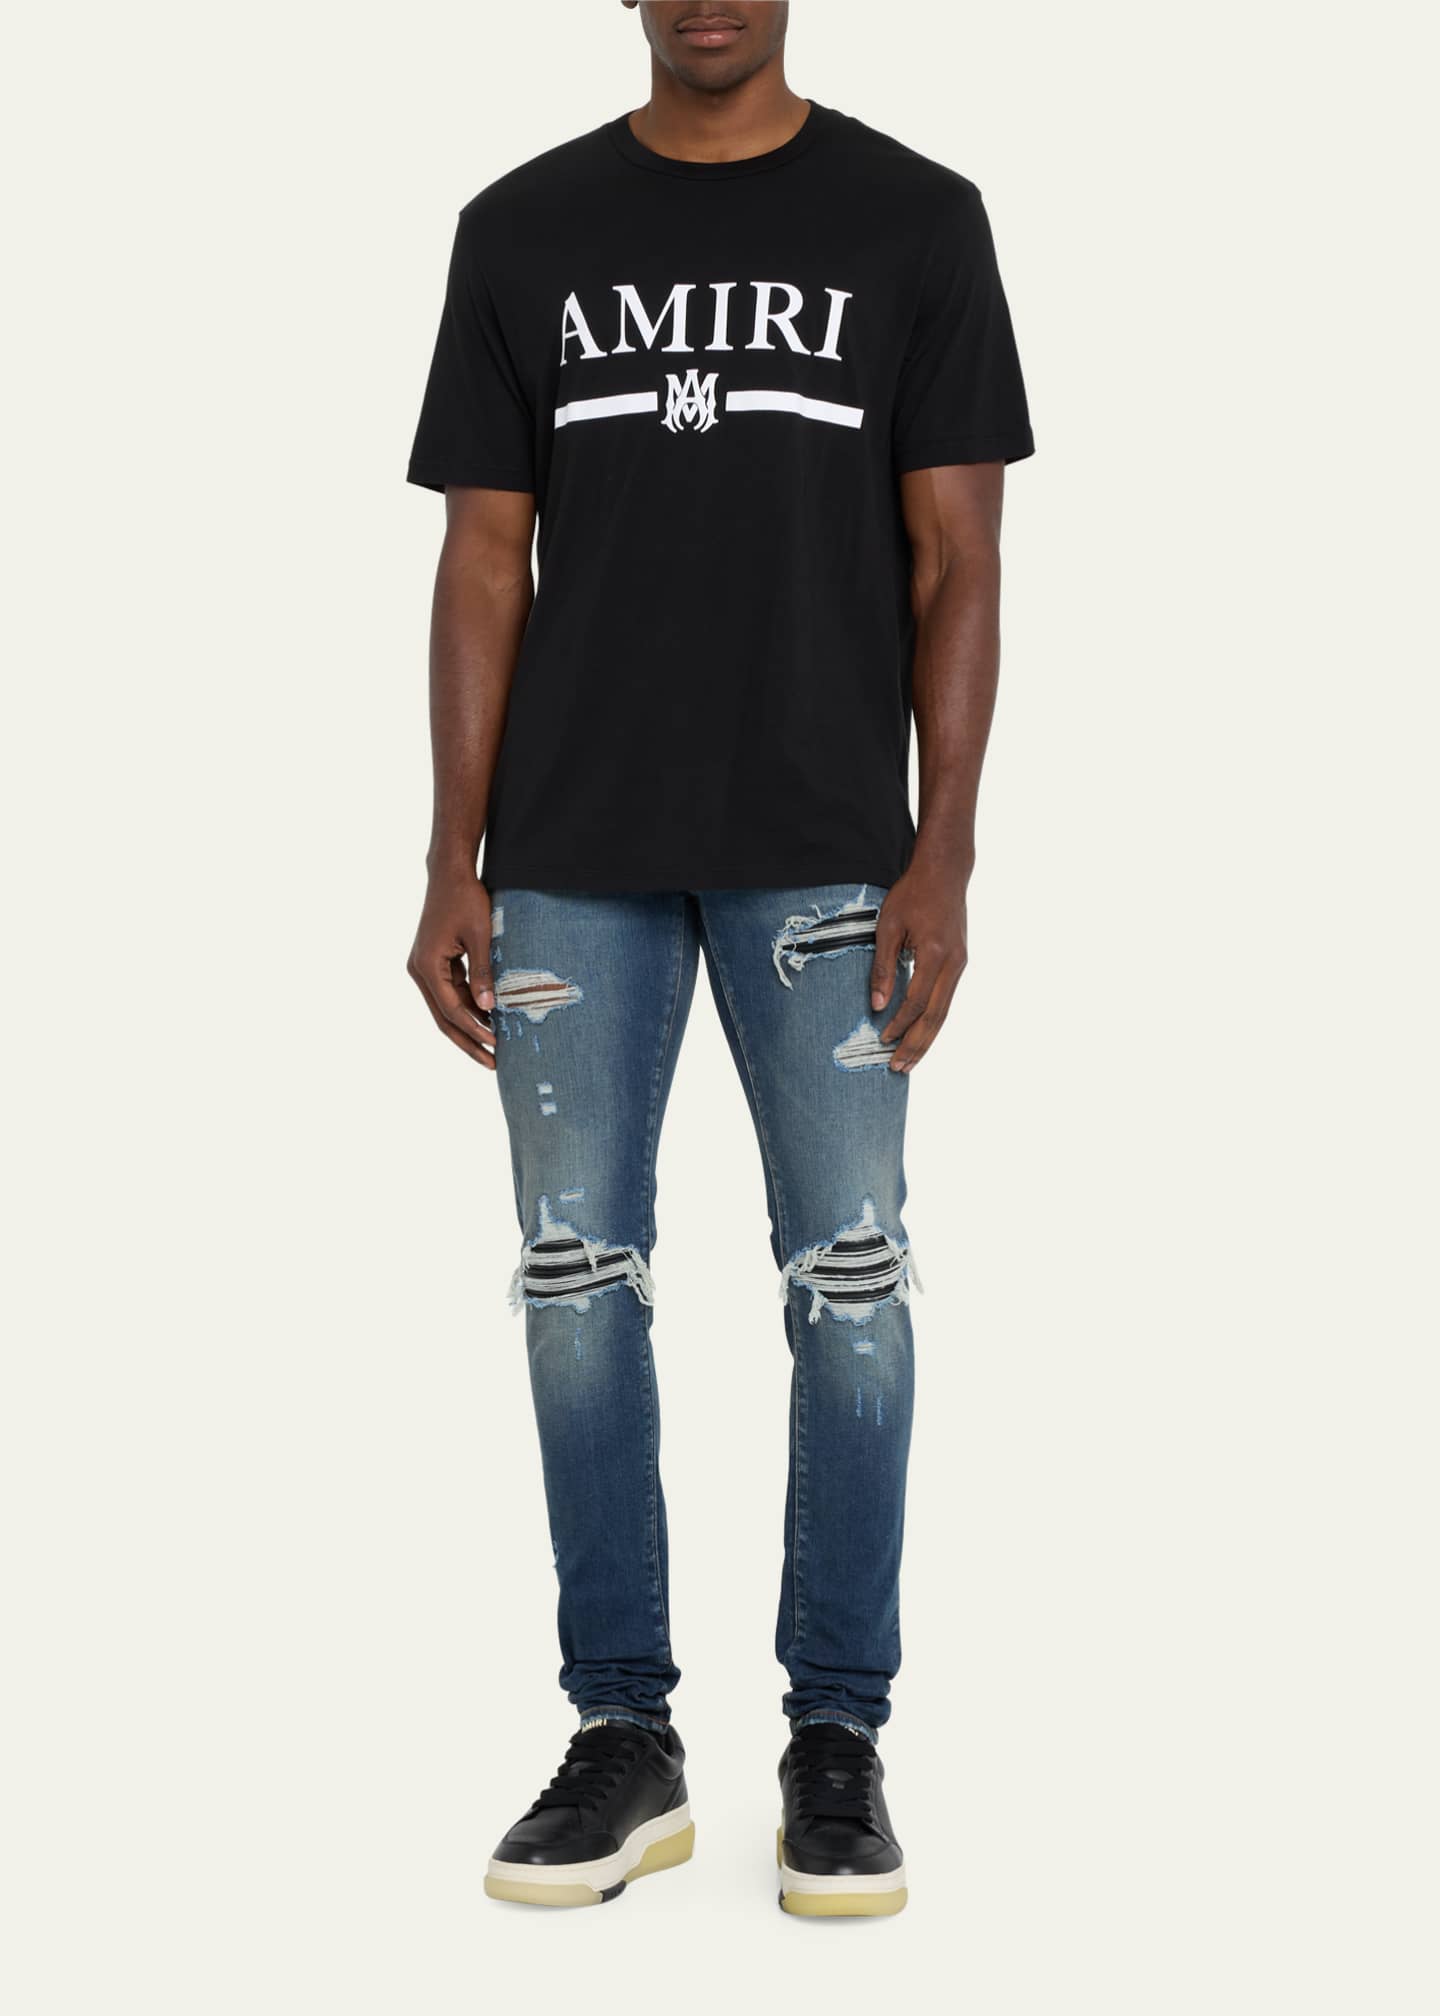 22cm肩幅AMIRI アミリ M.A. Bar MAバー 半袖 Tシャツ ブラウン S